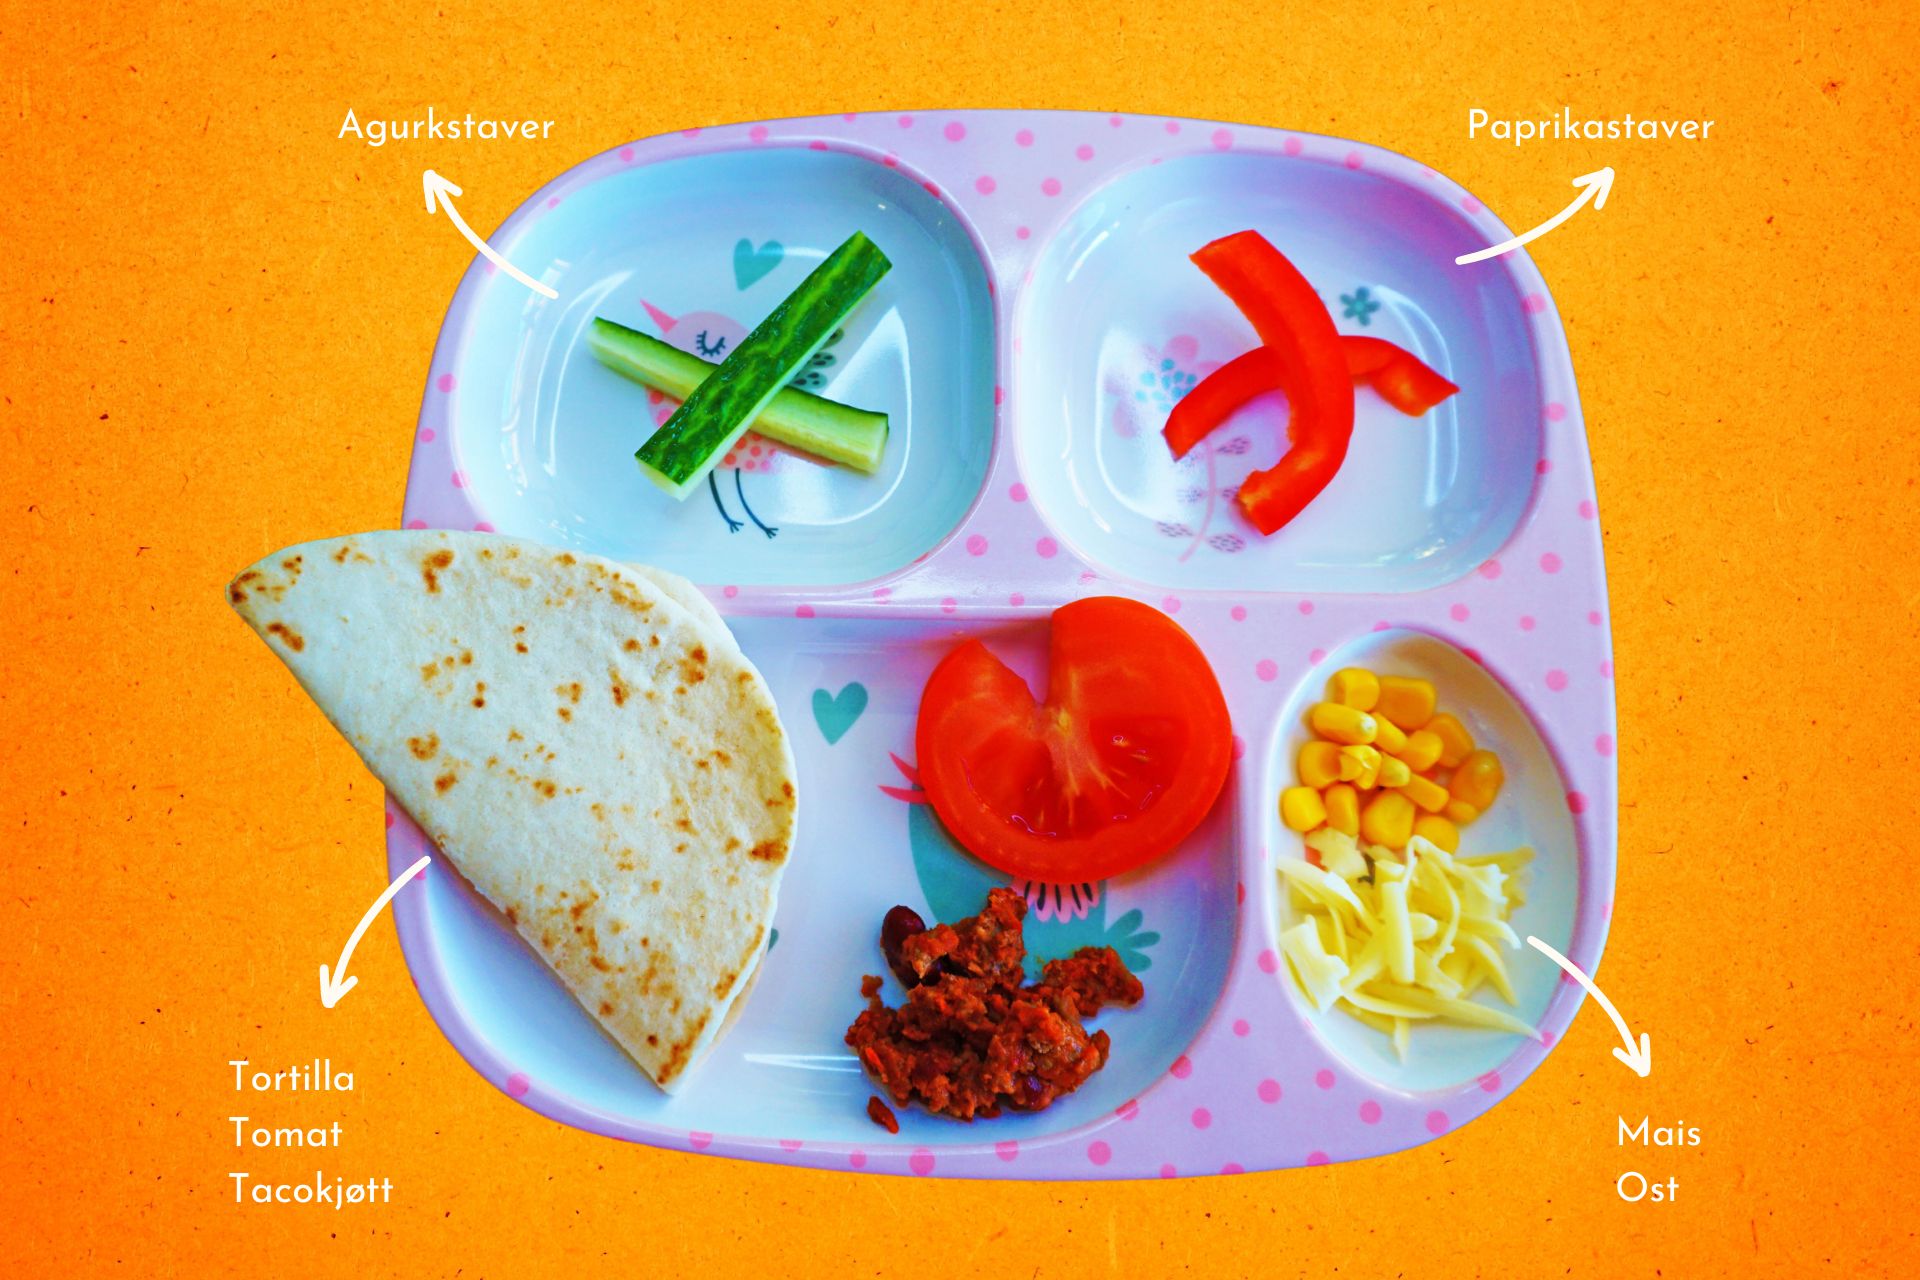 Barnevennlig tacoform